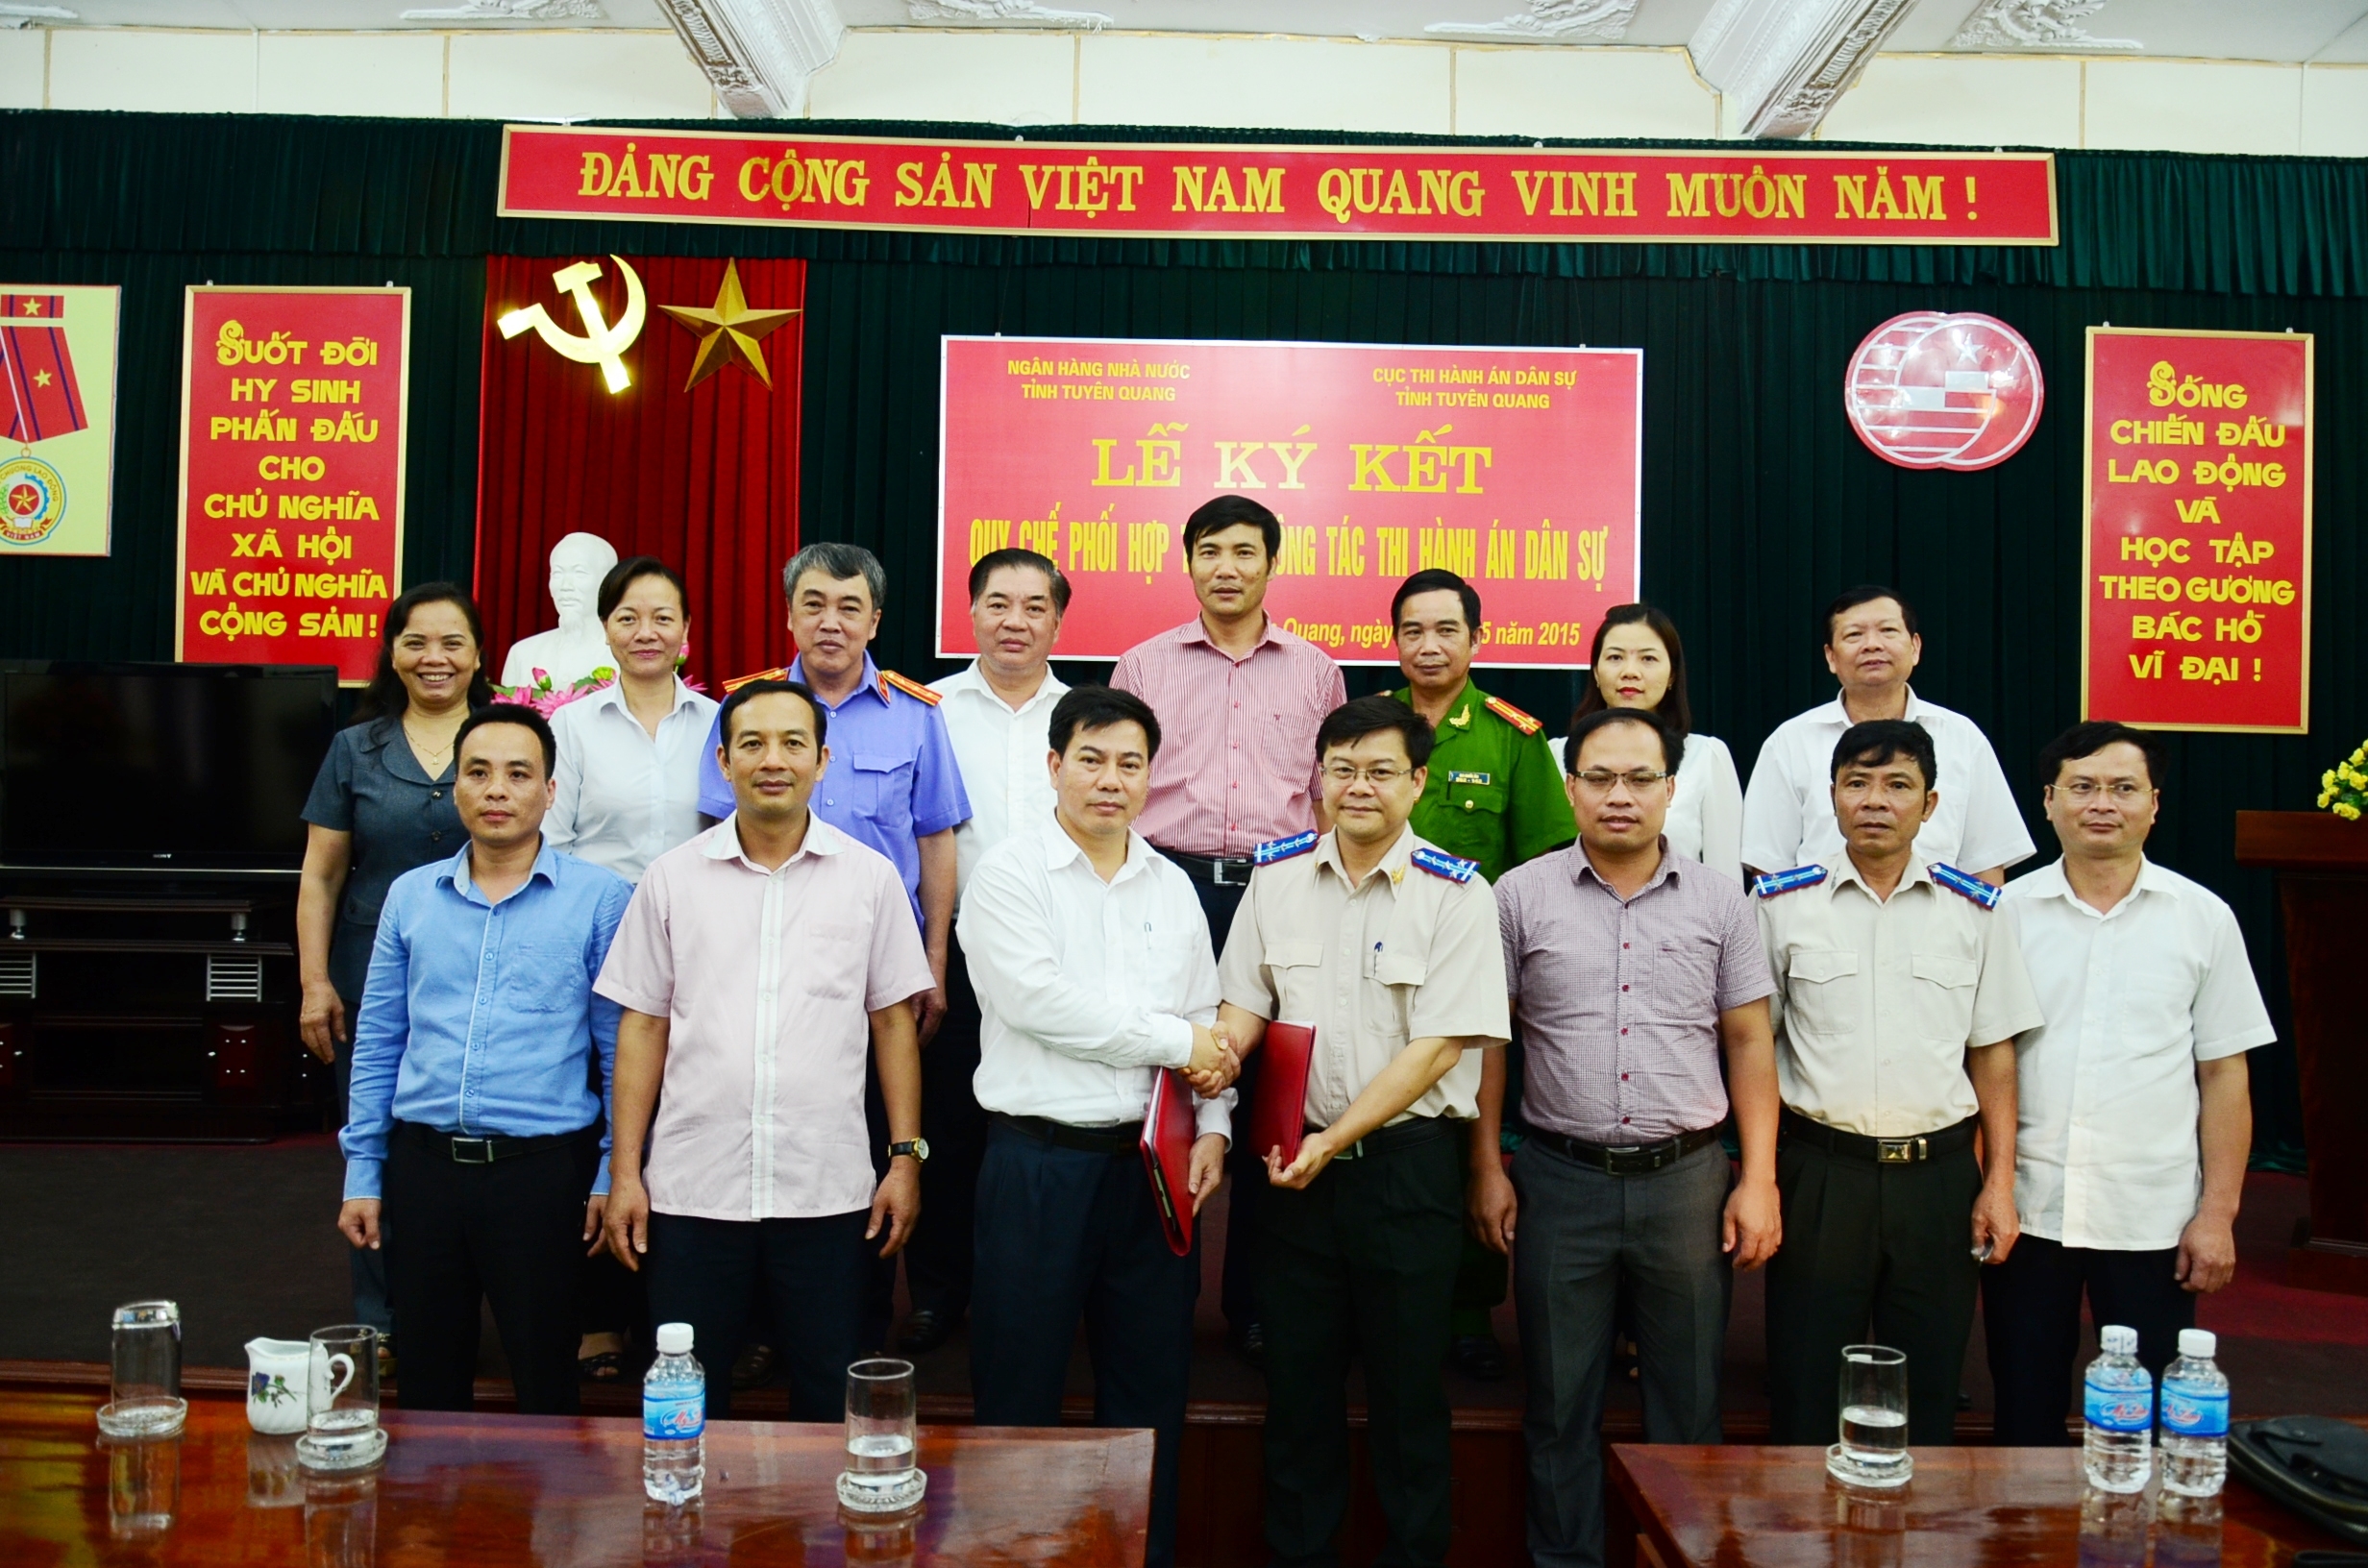 Thi hành án dân sự tỉnh Tuyên Quang - Không ngừng trưởng thành lớn mạnh và tự hào trên quê hương cách mạng